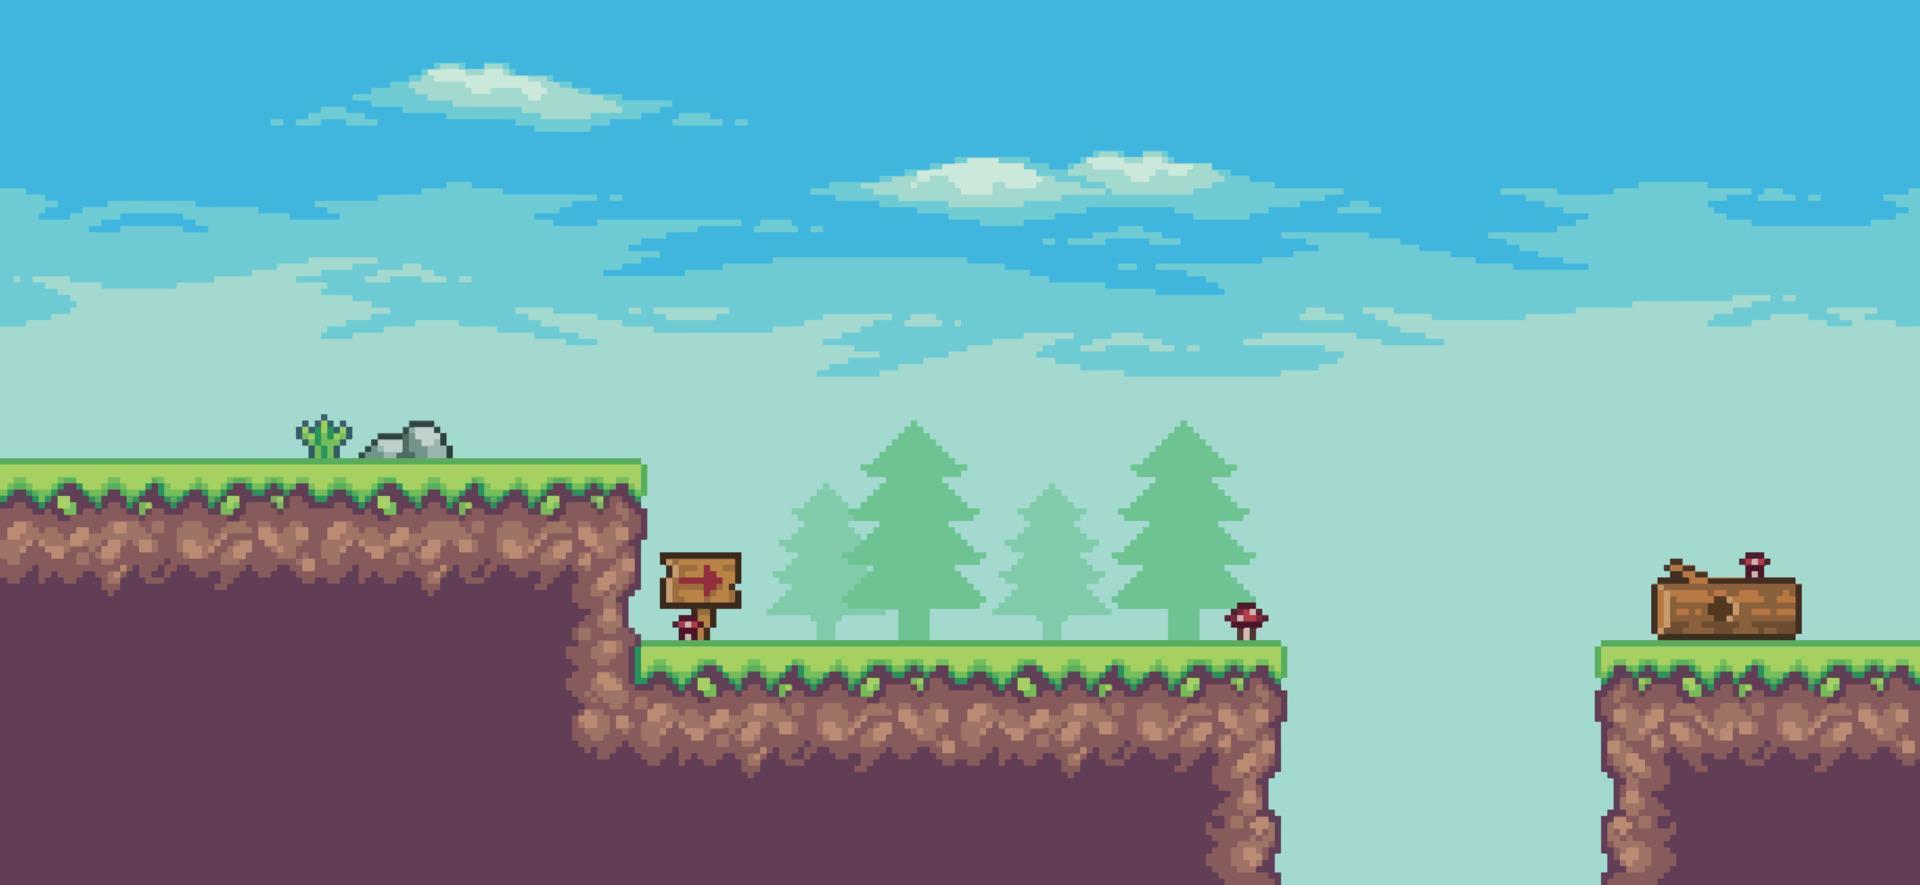 pixel art arkadspelscen med träd, stam, bräda, stenar och moln 8bit bakgrund vektor